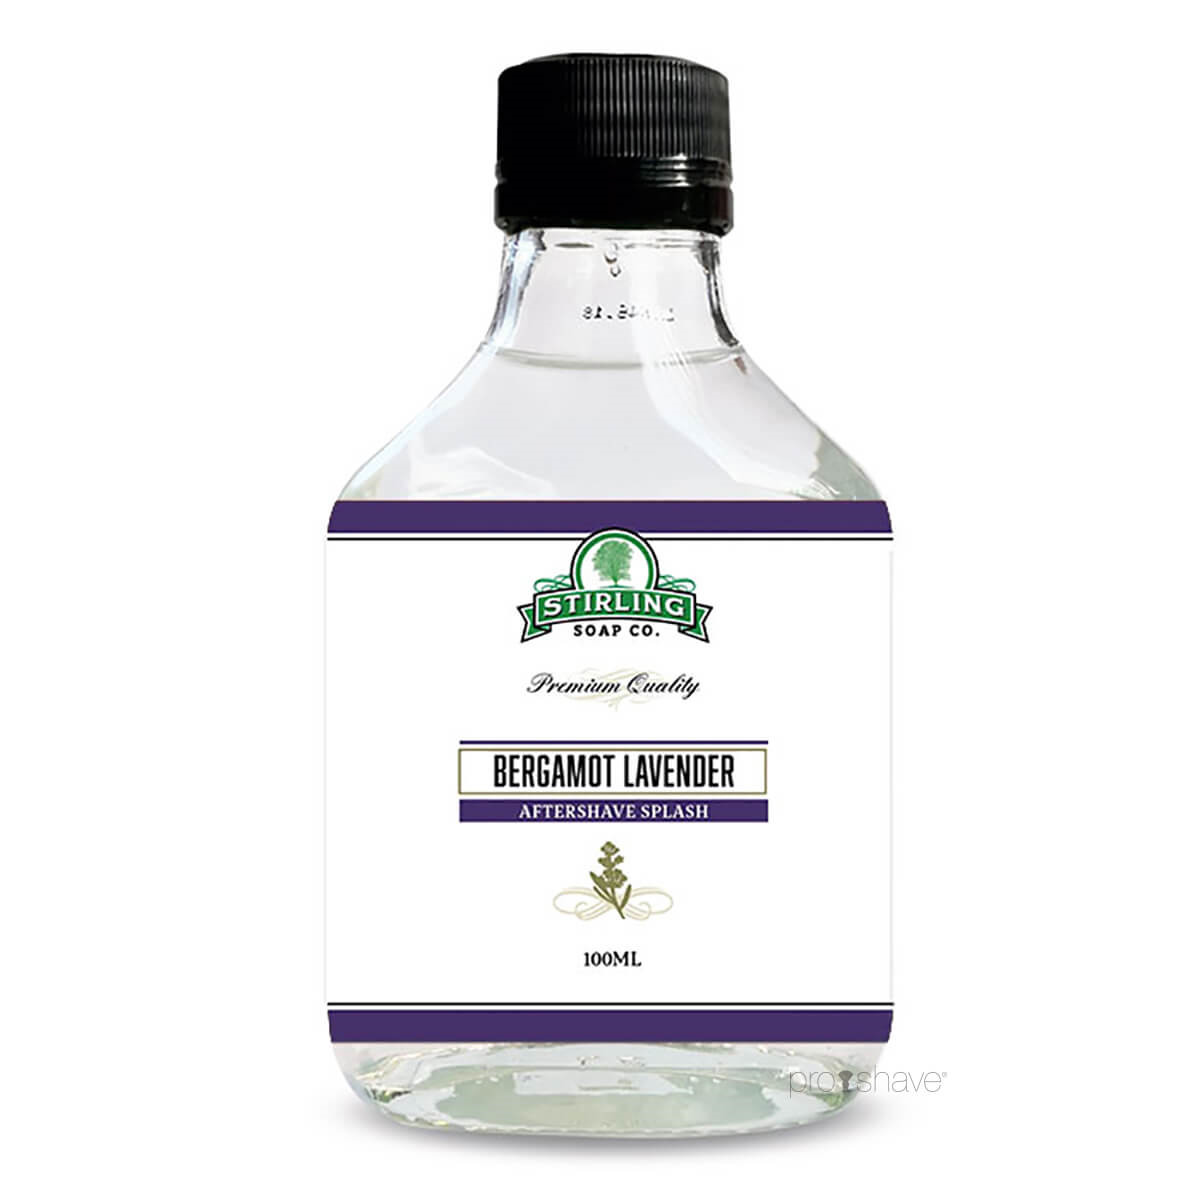 Stirling Soap Co. Aftershave Splash, Bergamot Lavender, 100 ml.